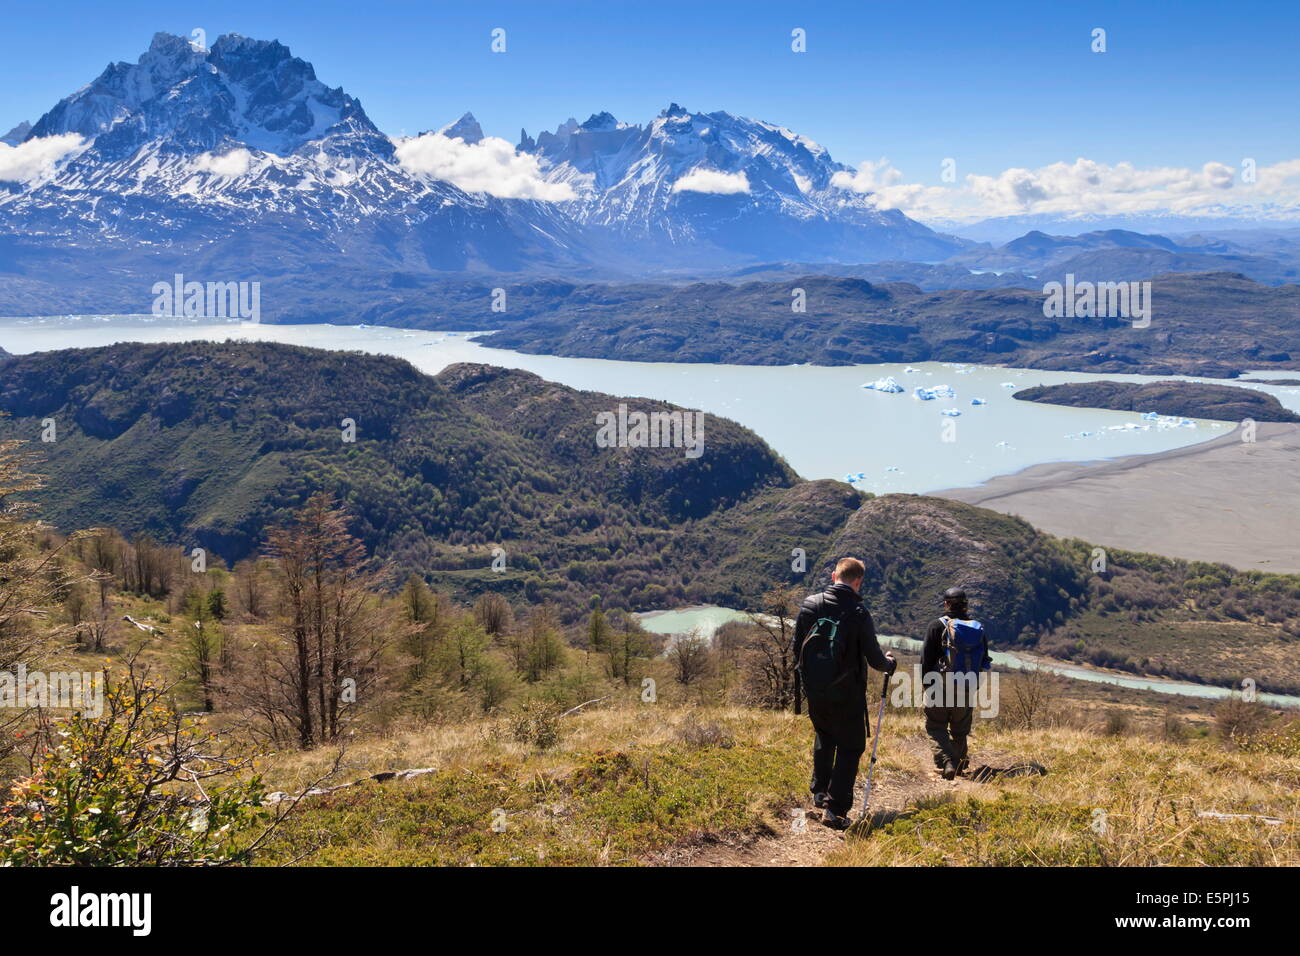 Les randonneurs descendent une pente gazonnée avec lac, montagne et vue d'iceberg ; près de Ferrier Vista Point, Torres del Paine, Patagonie, Chili Banque D'Images